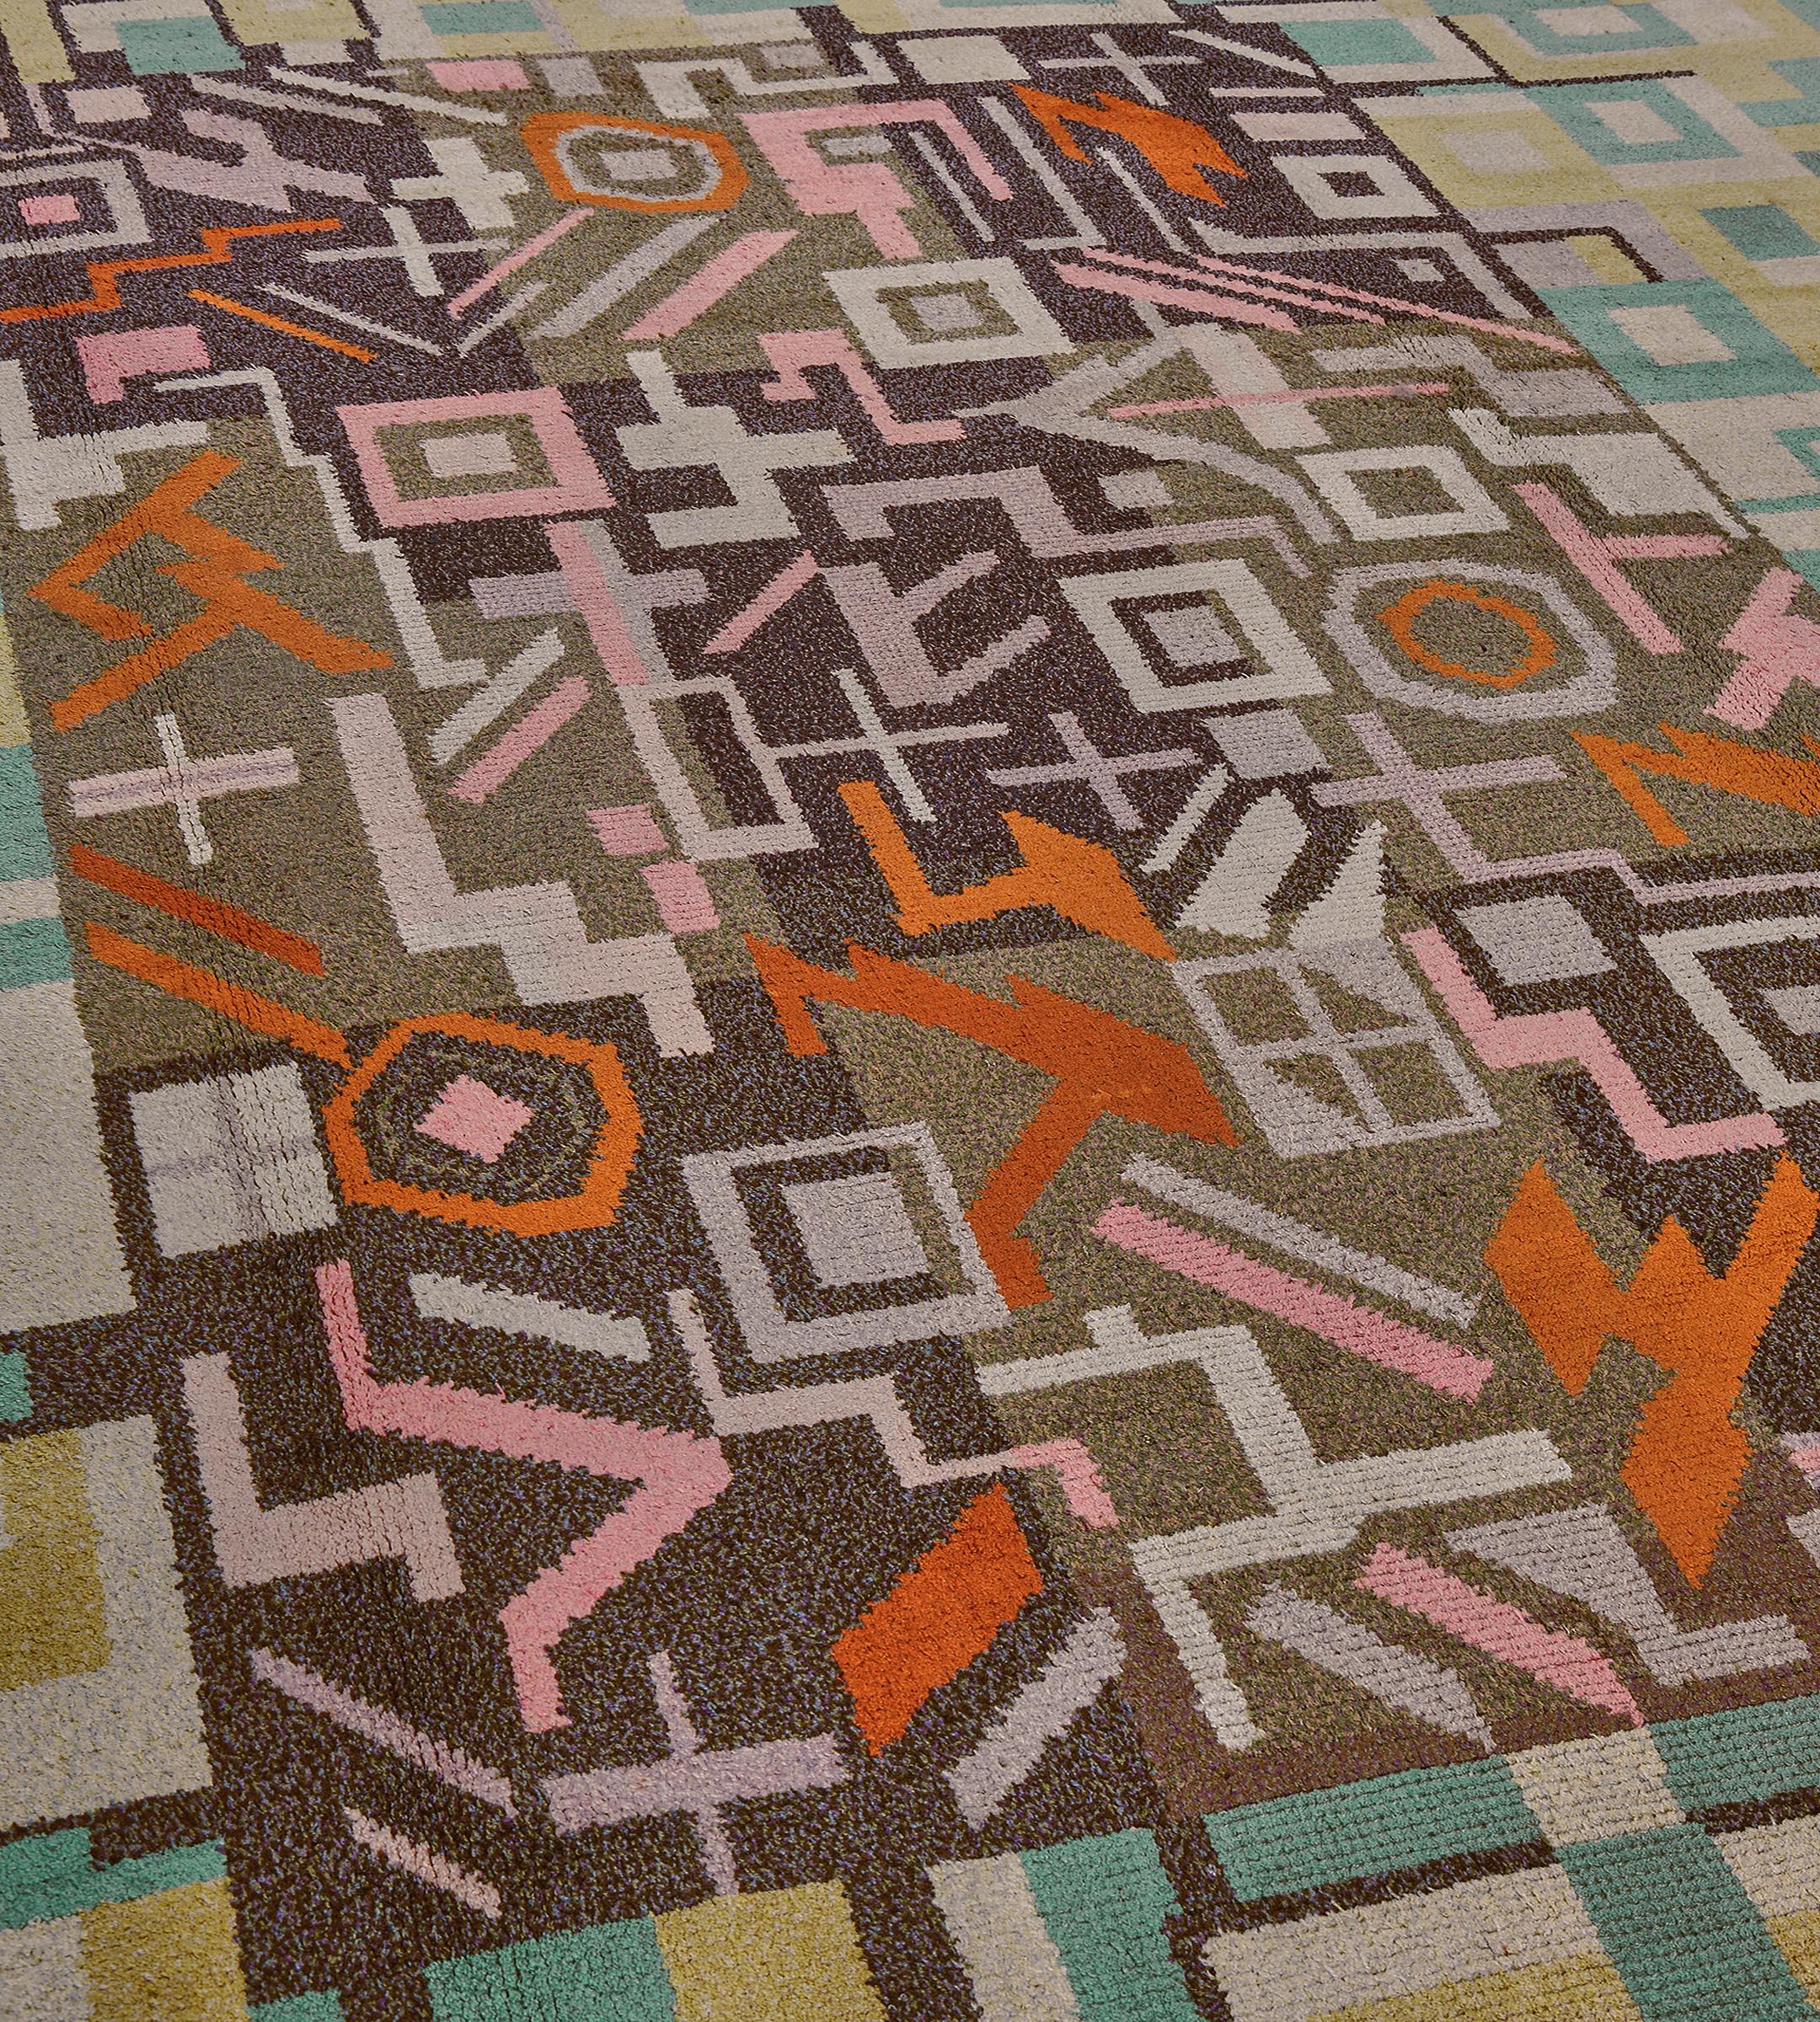 Dieser traditionelle, handgewebte schwedische Teppich hat ein kariertes Feld in Beige und Anthrazit, das von einem unerwarteten geometrischen Muster überlagert wird, mit einer prächtigen türkisfarbenen Deko-Bordüre und einer elfenbeinfarbenen